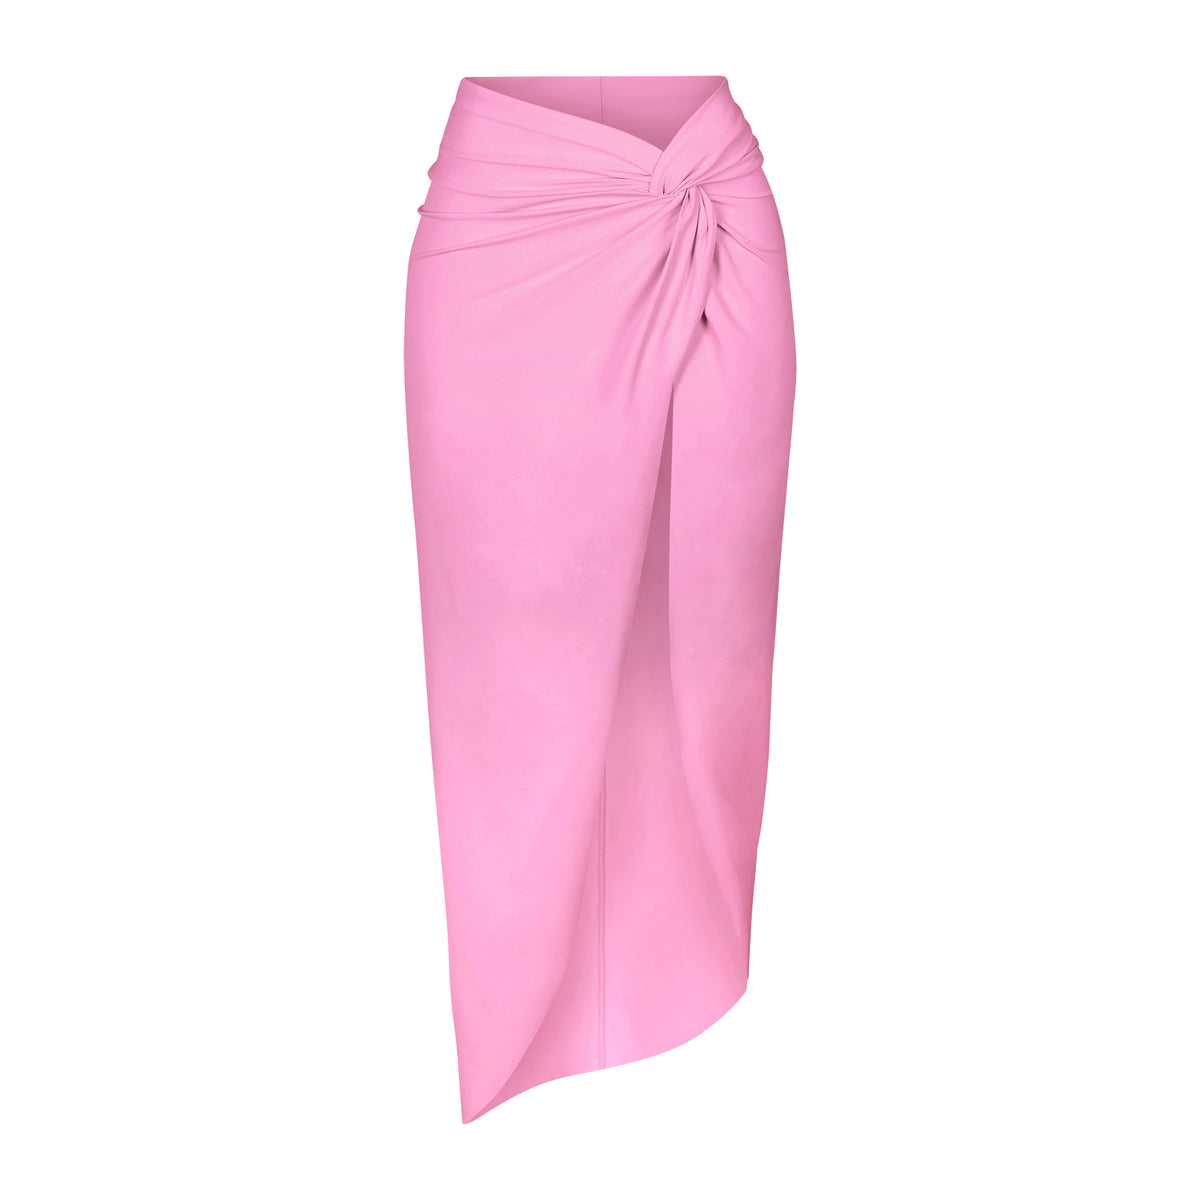 Track Rhinestone Swim Strappy Skirt - Light Pink - XXS at Skims